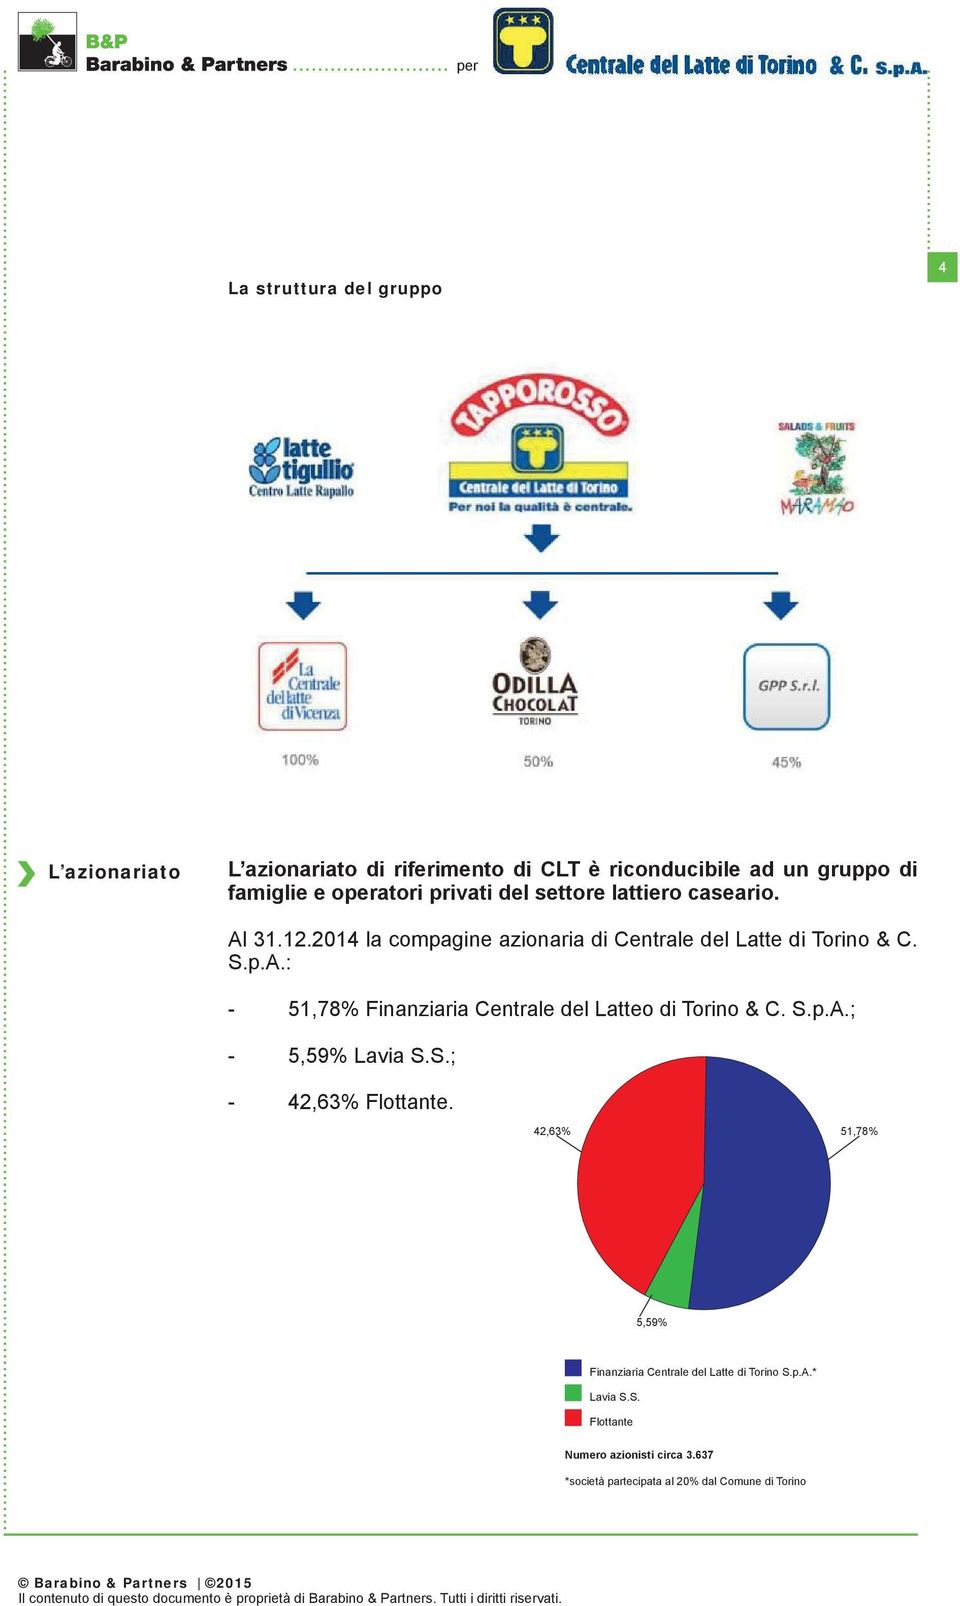 S.p.A.; - 5,59% Lavia S.S.; - 42,63% Flottante. 42,63% 51,78% 5,59% Finanziaria Centrale del Latte di Torino S.p.A.* Lavia S.S. Flottante Numero azionisti circa 3.